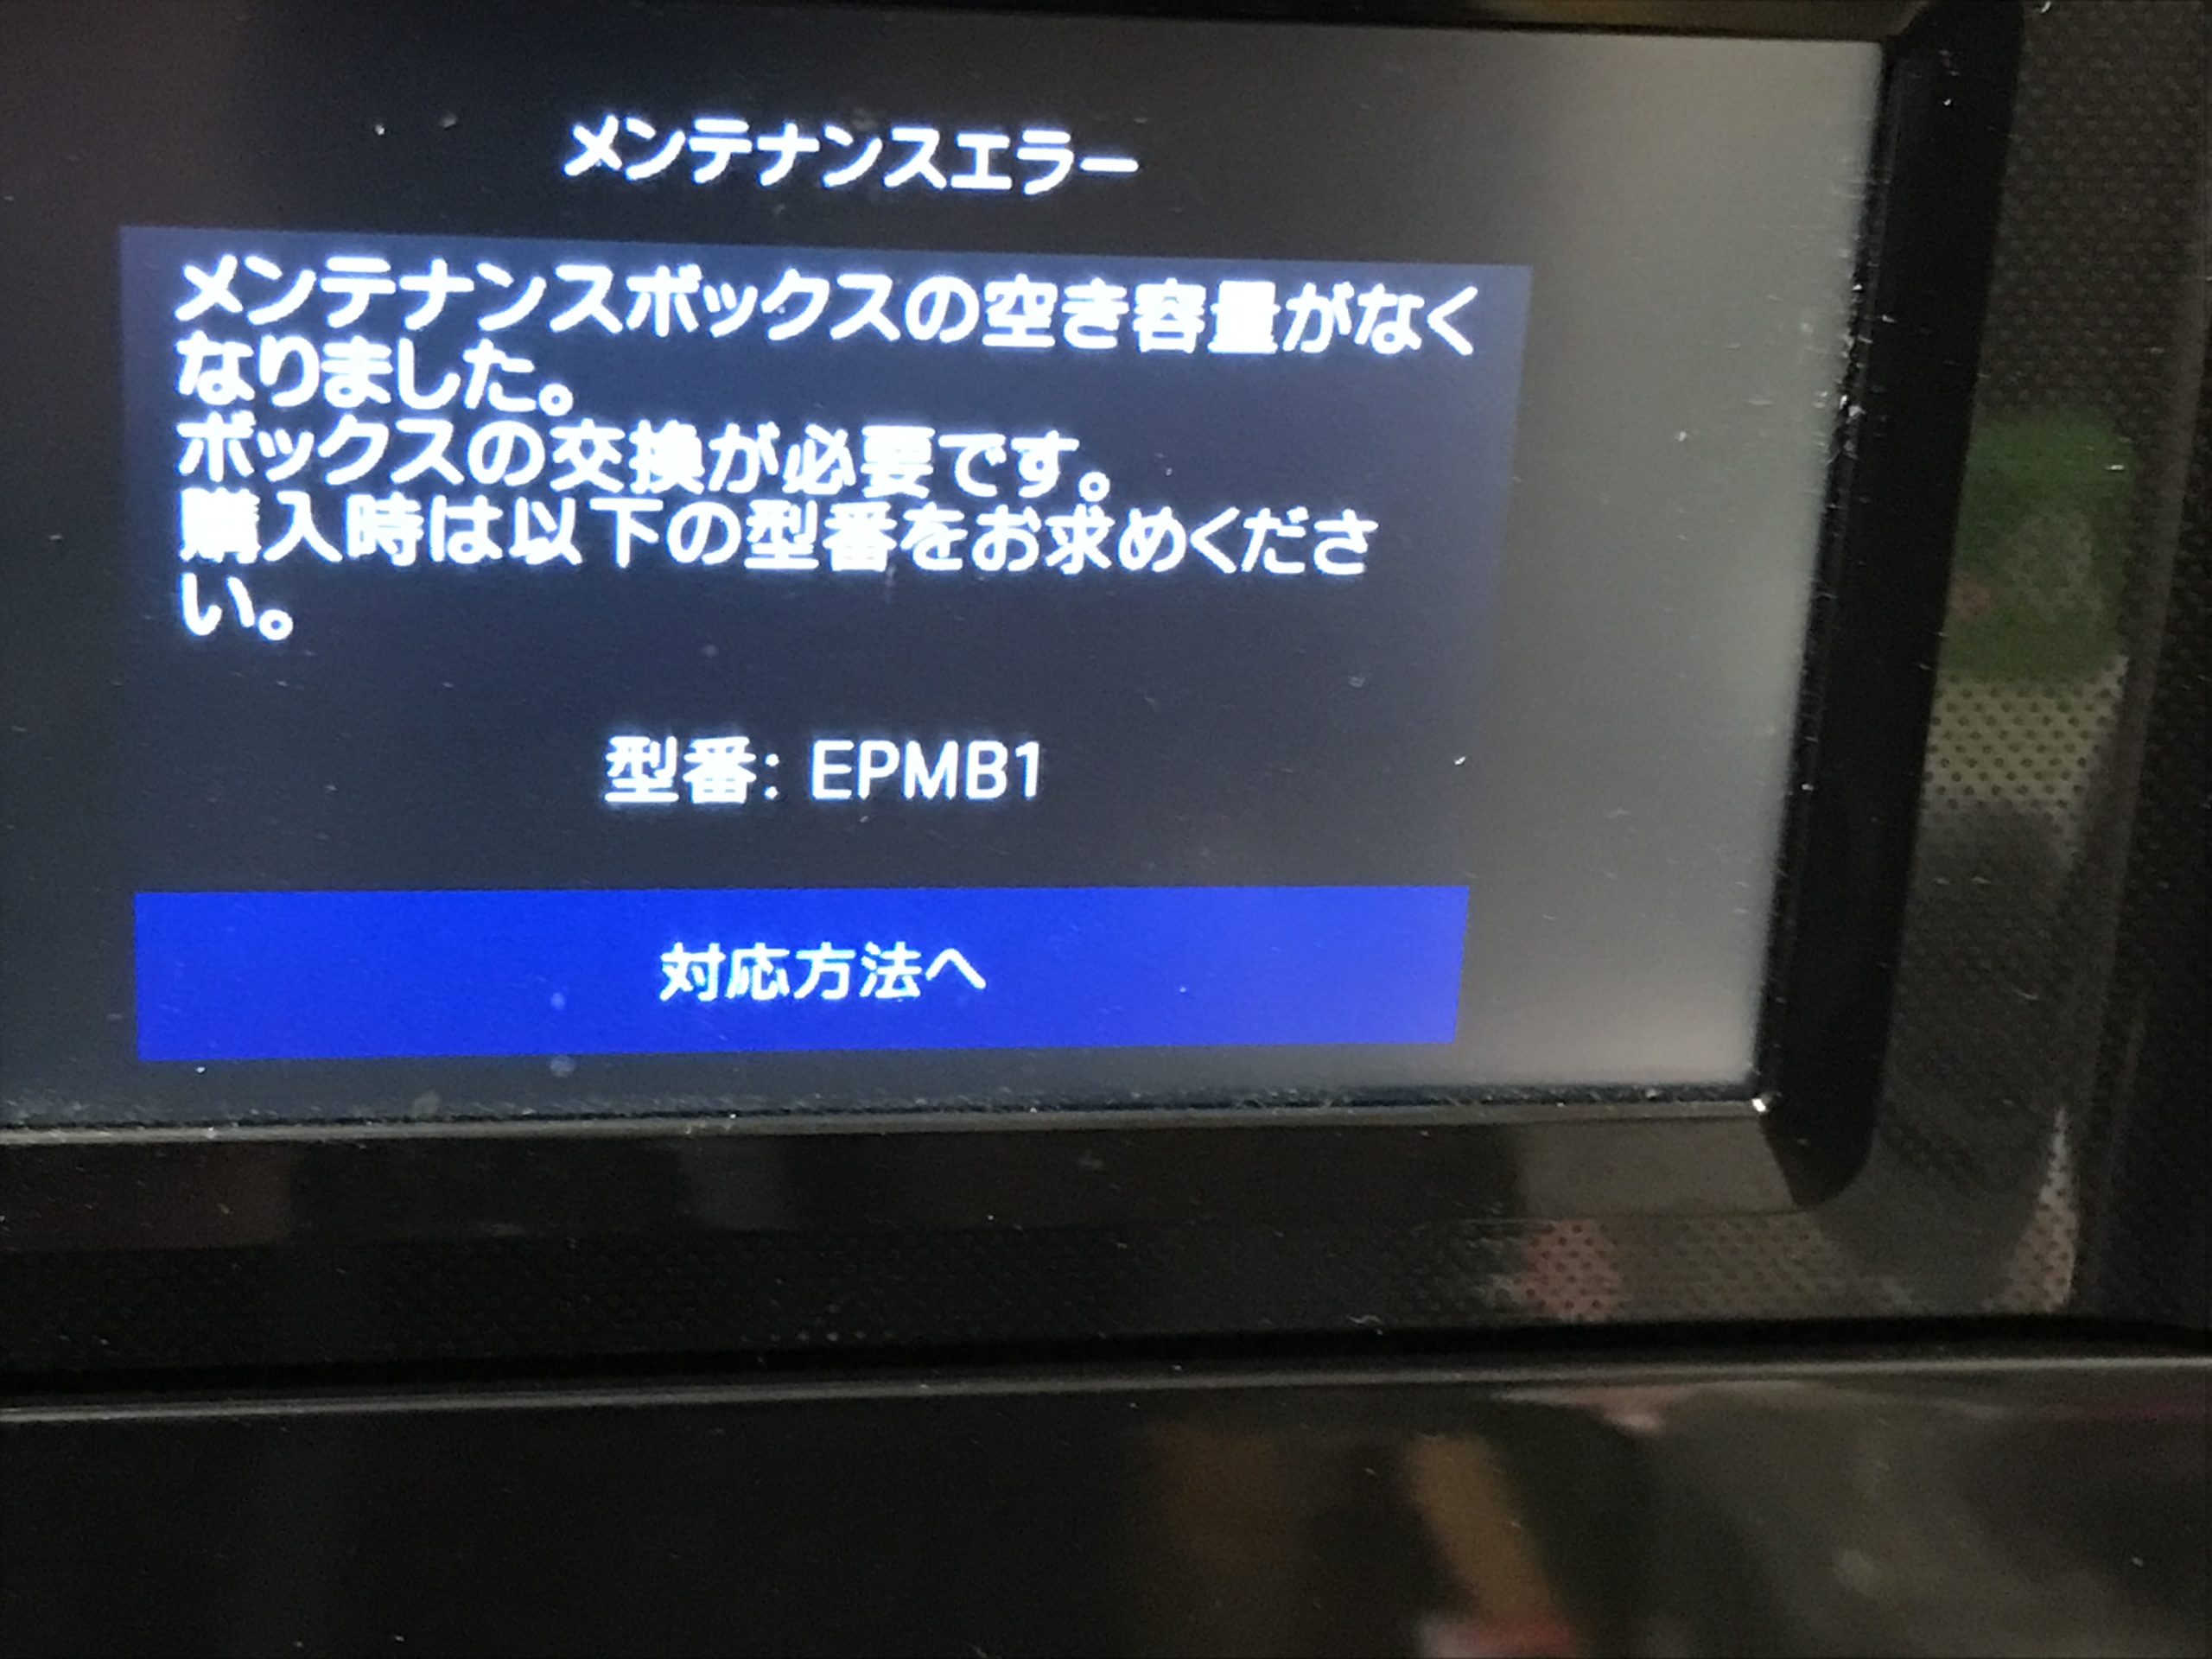 プリンターの操作パネル上に、メンテナンスボックス交換のメッセージが表示される。